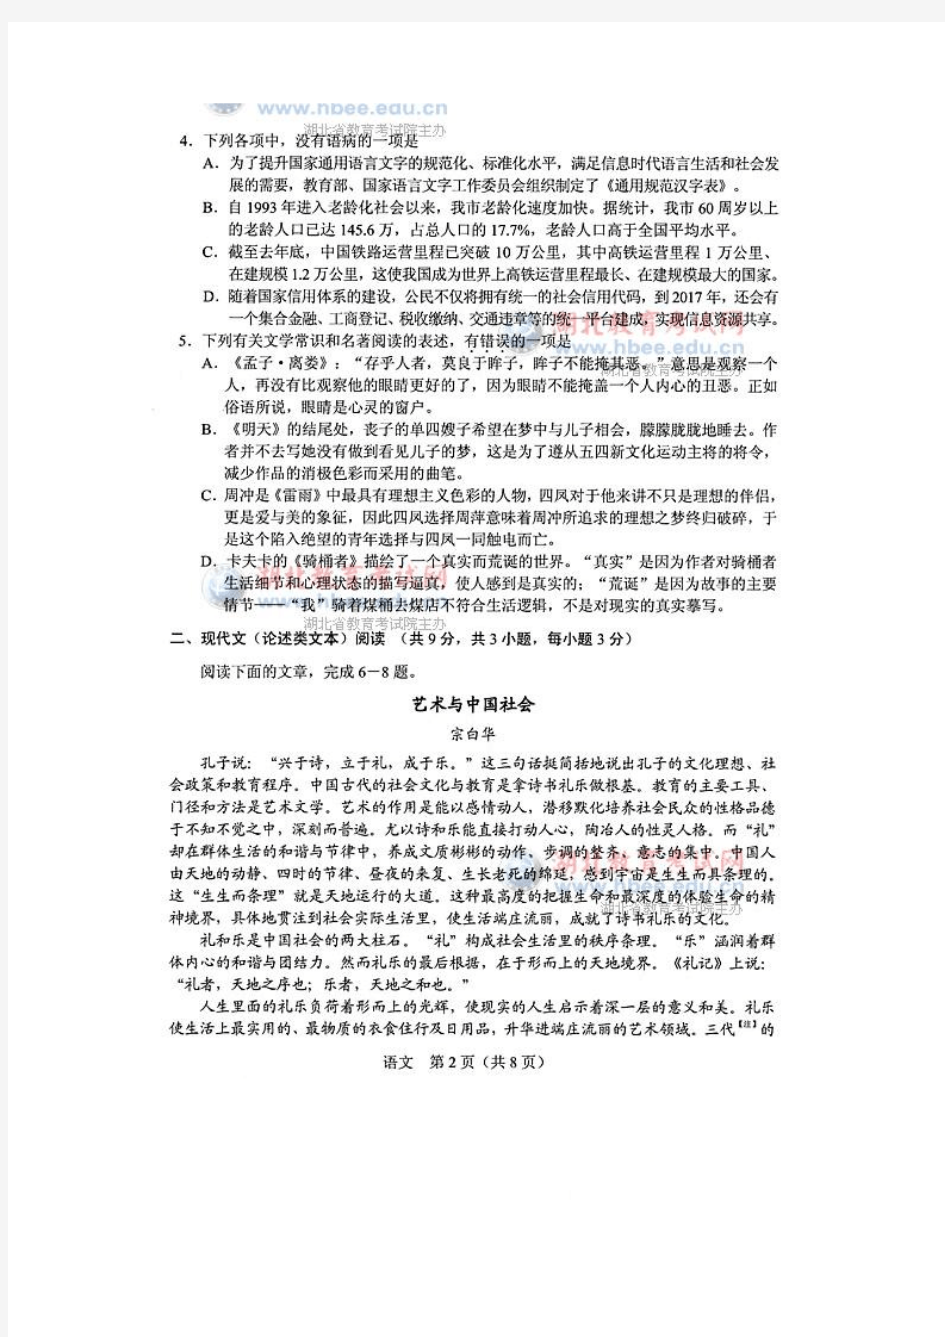 2014年湖北省高考语文试卷及参考答案(官方版)